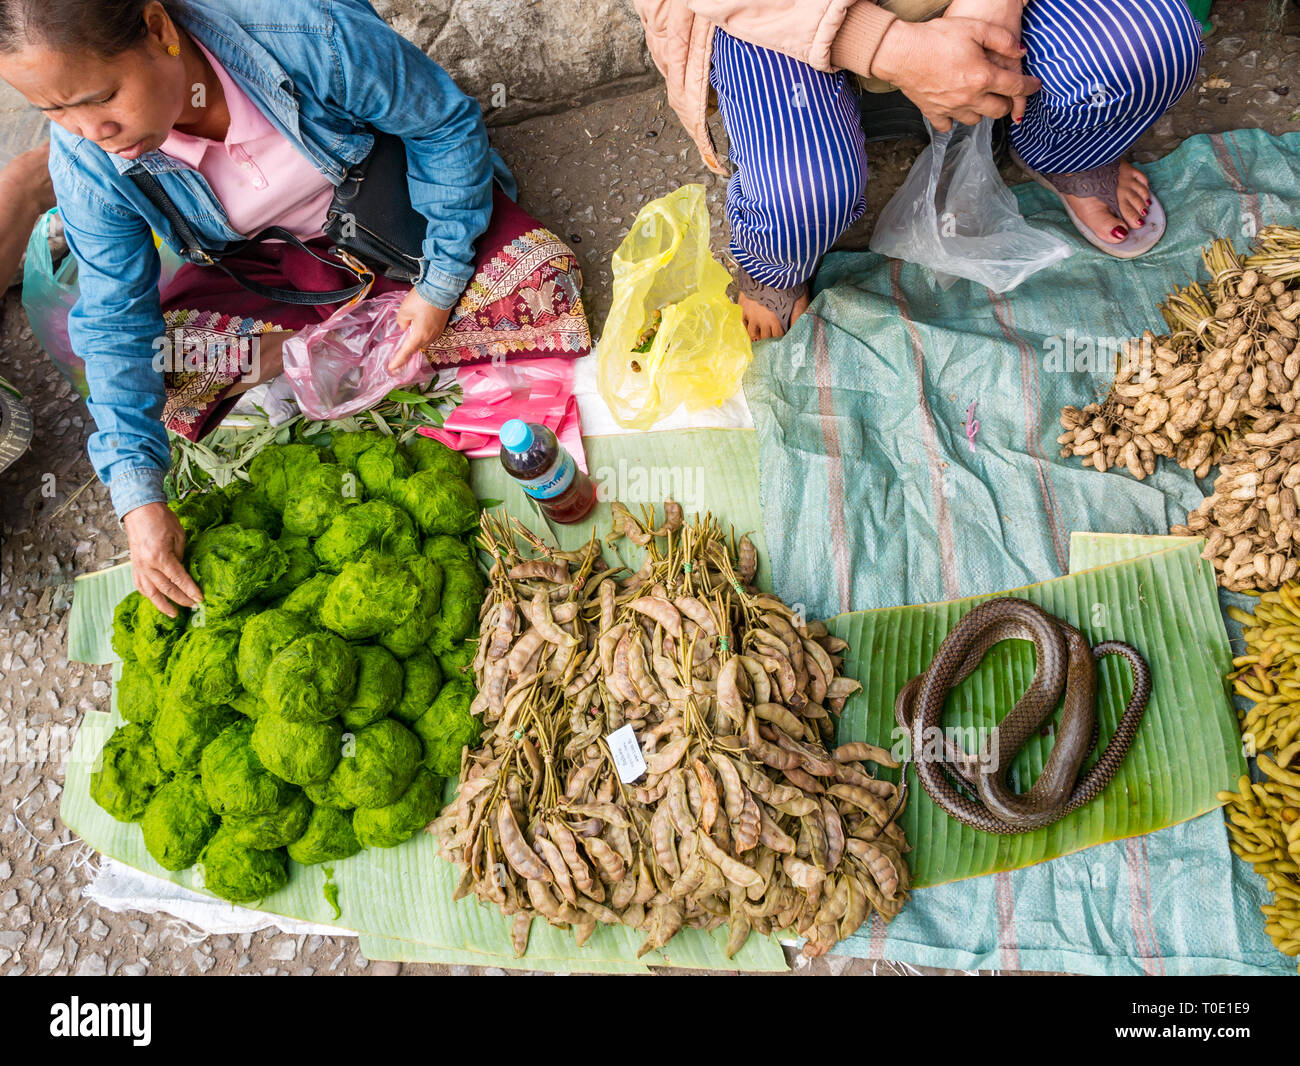 Mujer vistiendo Laos tradicional falda tejida vendiendo algas río verde hierba, serpiente y frijoles, mañana comida de la calle Market, en Luang Prabang, Laos, Sudeste de Asia Foto de stock